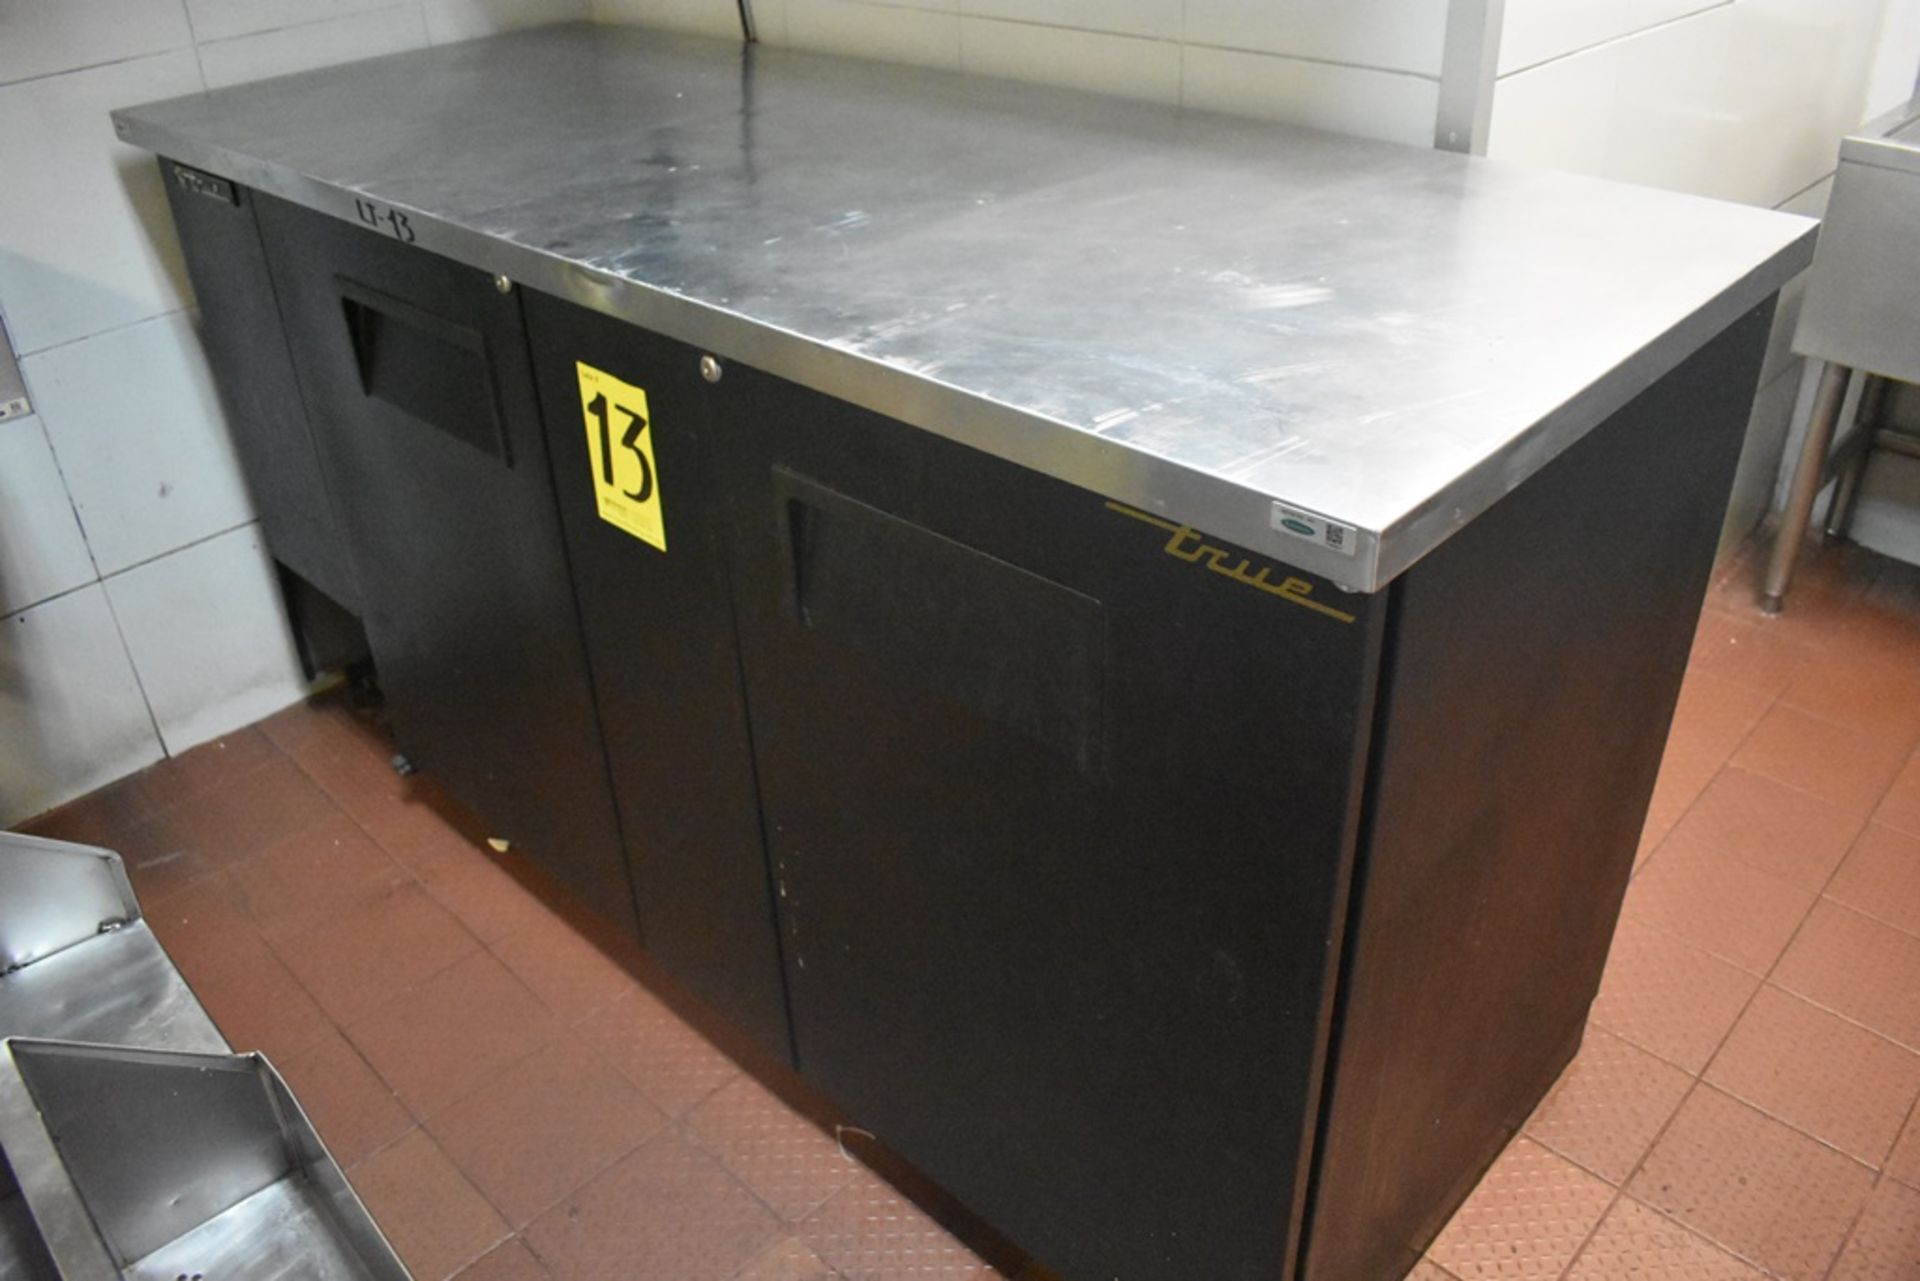 Mesa de trabajo refrigerada con cubierta en acero inoxidable marca True, modelo TBB-3, número de se